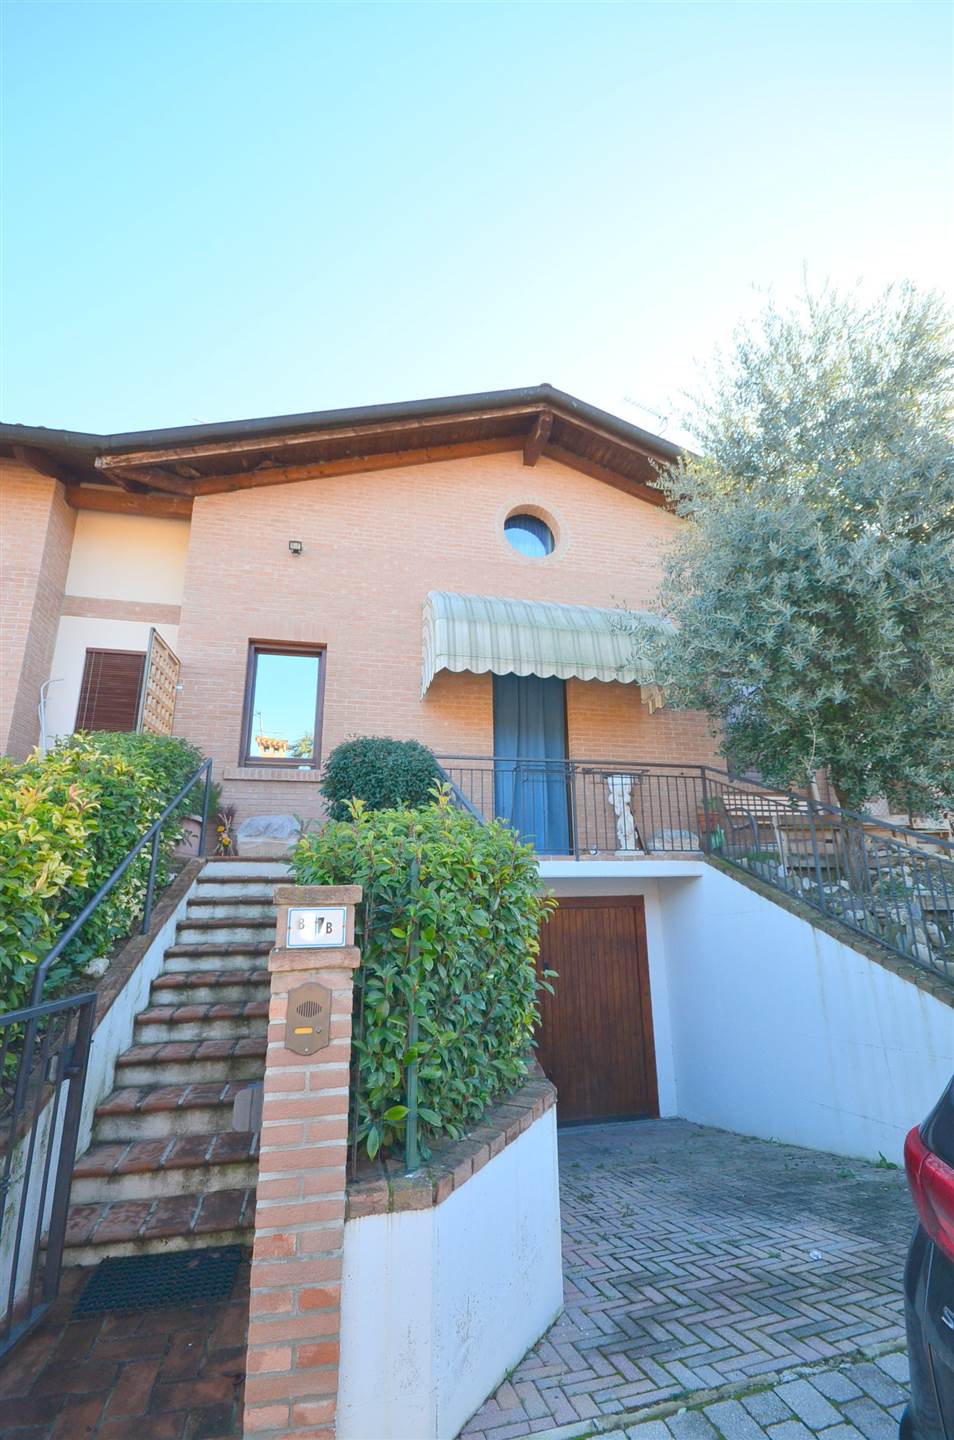 Villa a Schiera in vendita a Valsamoggia, 5 locali, zona Località: FAGNANO, prezzo € 187.000 | PortaleAgenzieImmobiliari.it